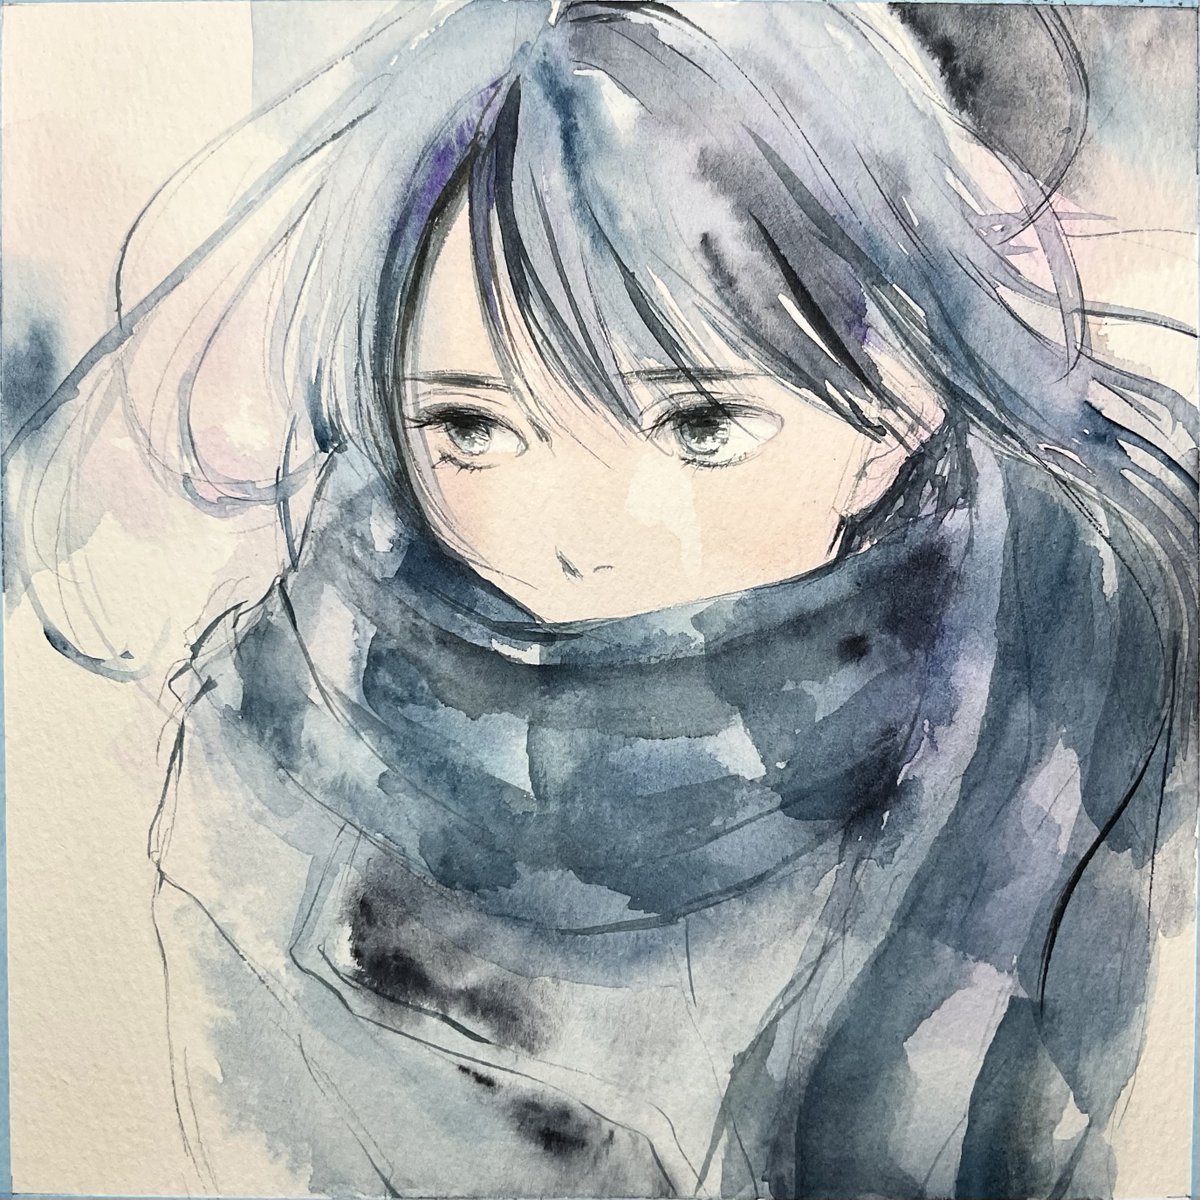 「まだまだまだまだ寒い... 」|hikari🌺つくし賞3/28～4/9のイラスト